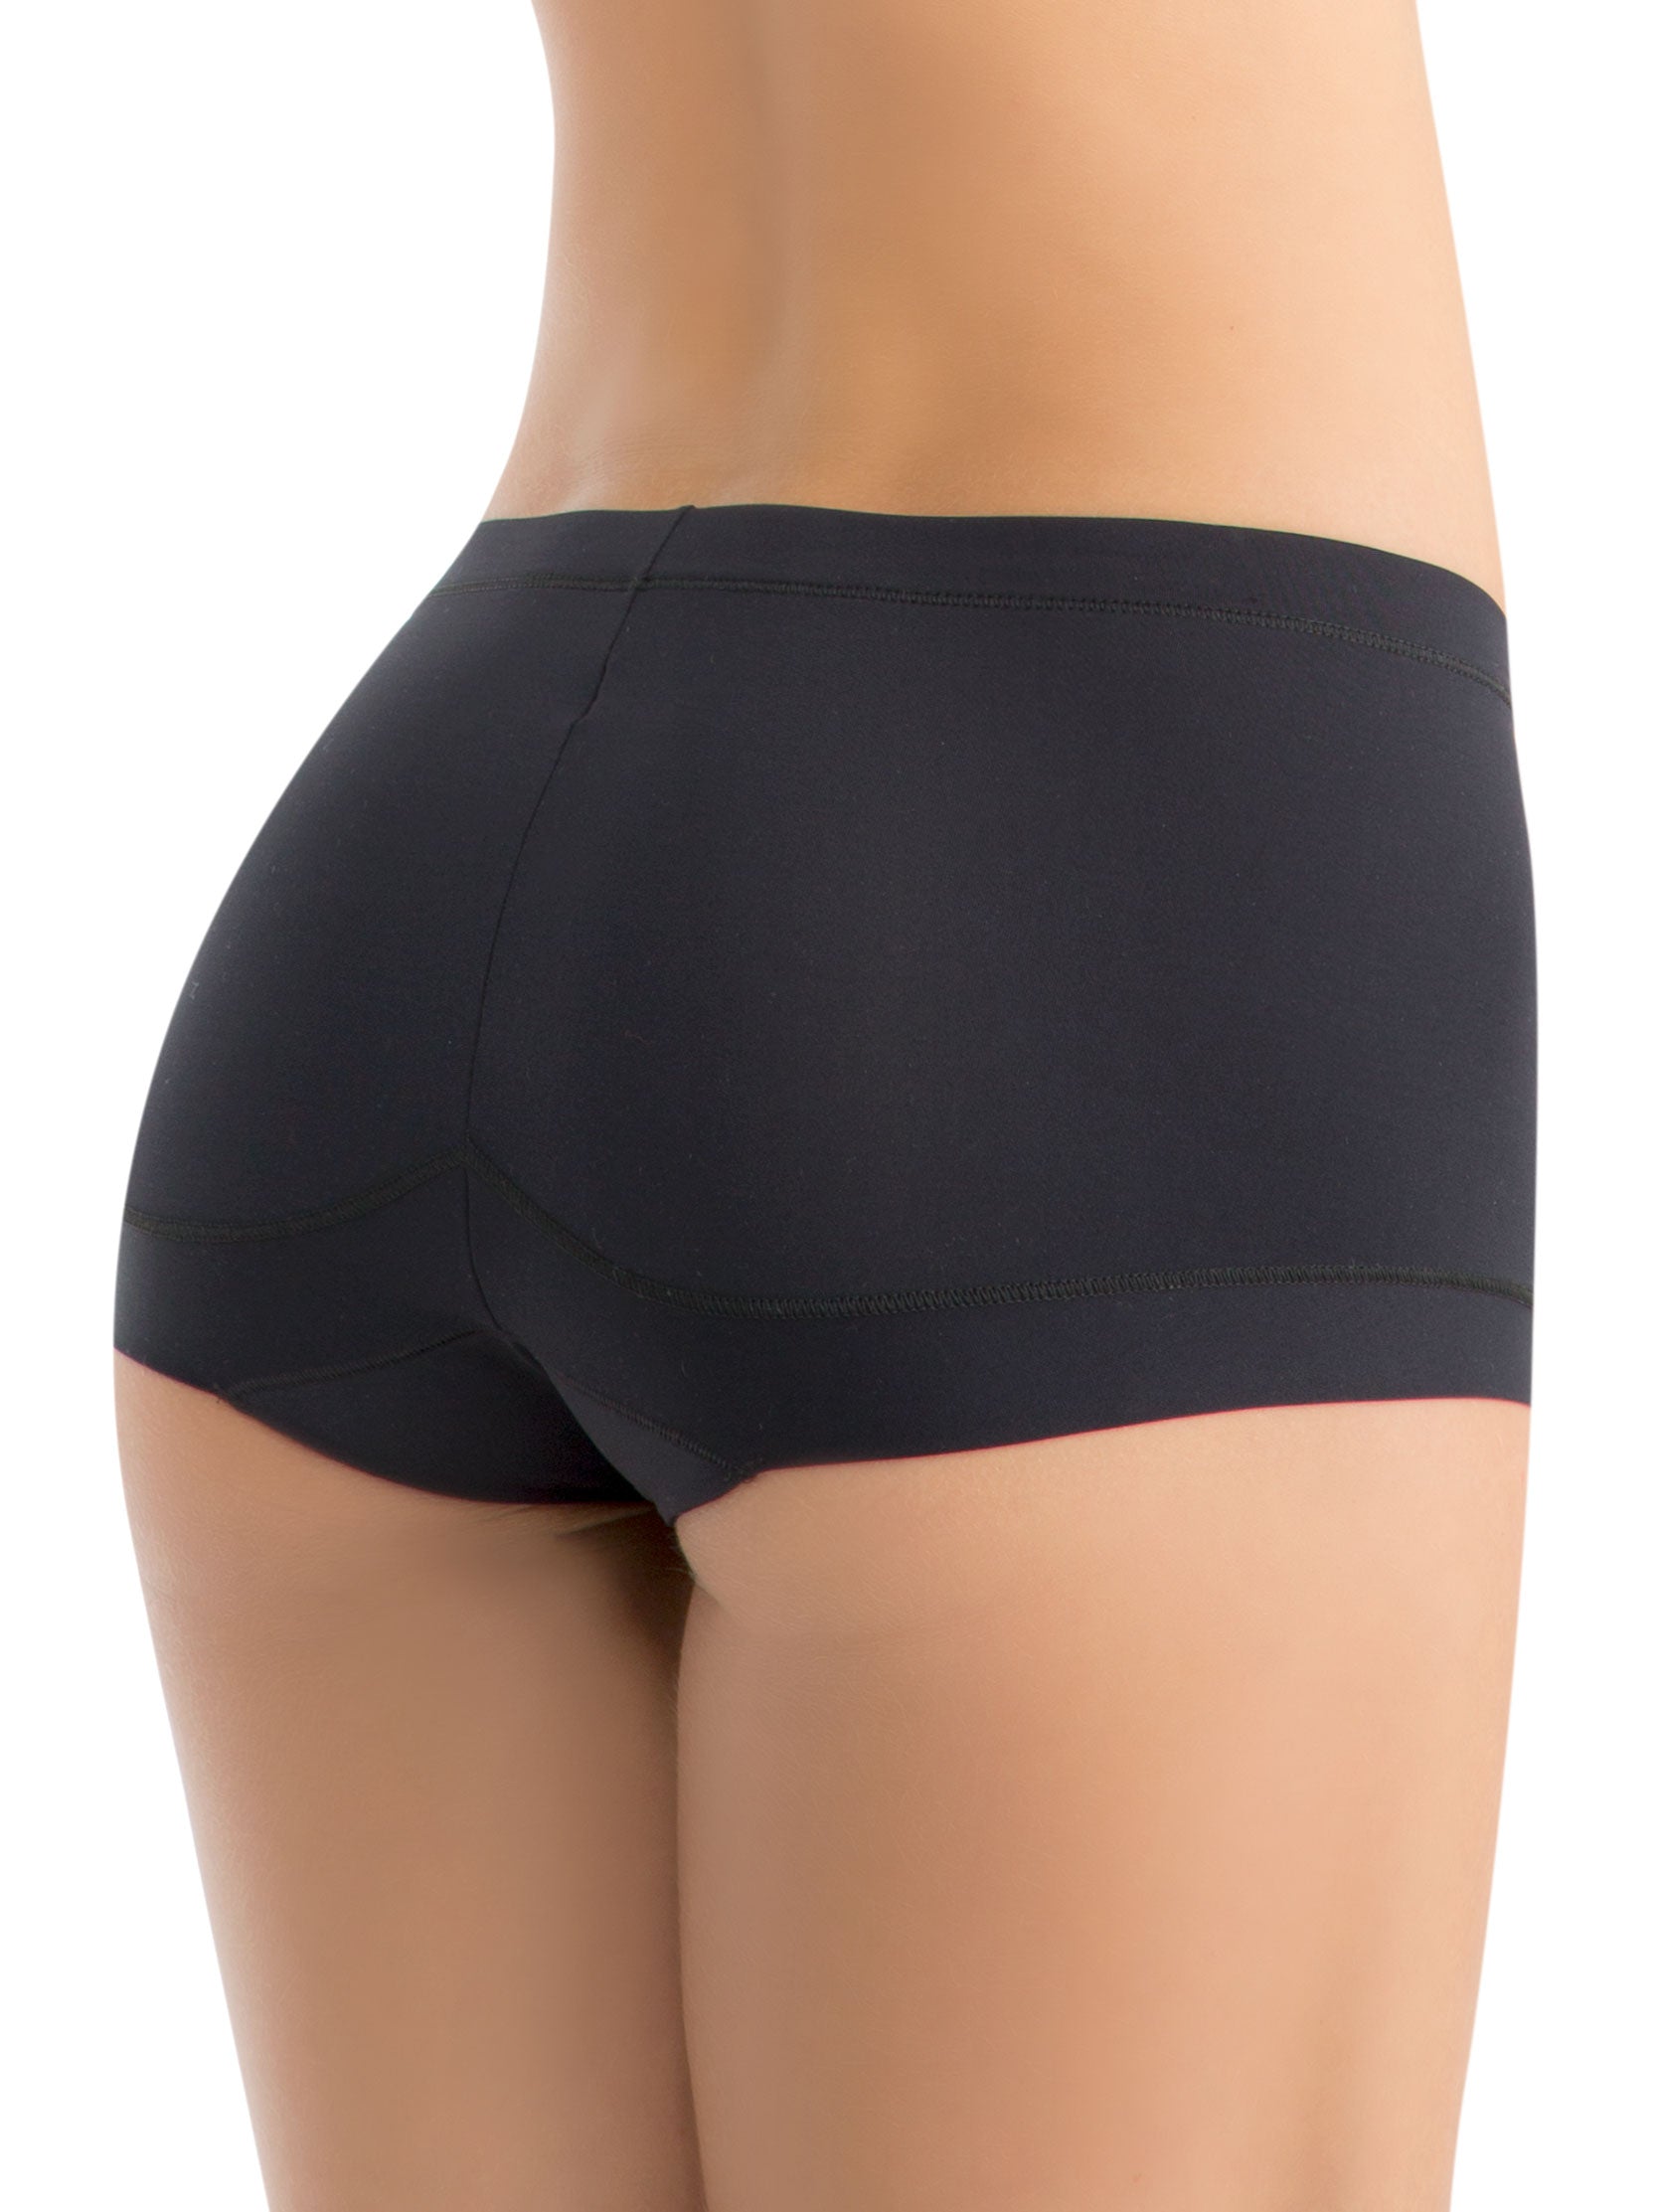 Boy Shorts Underwear for Women 1407